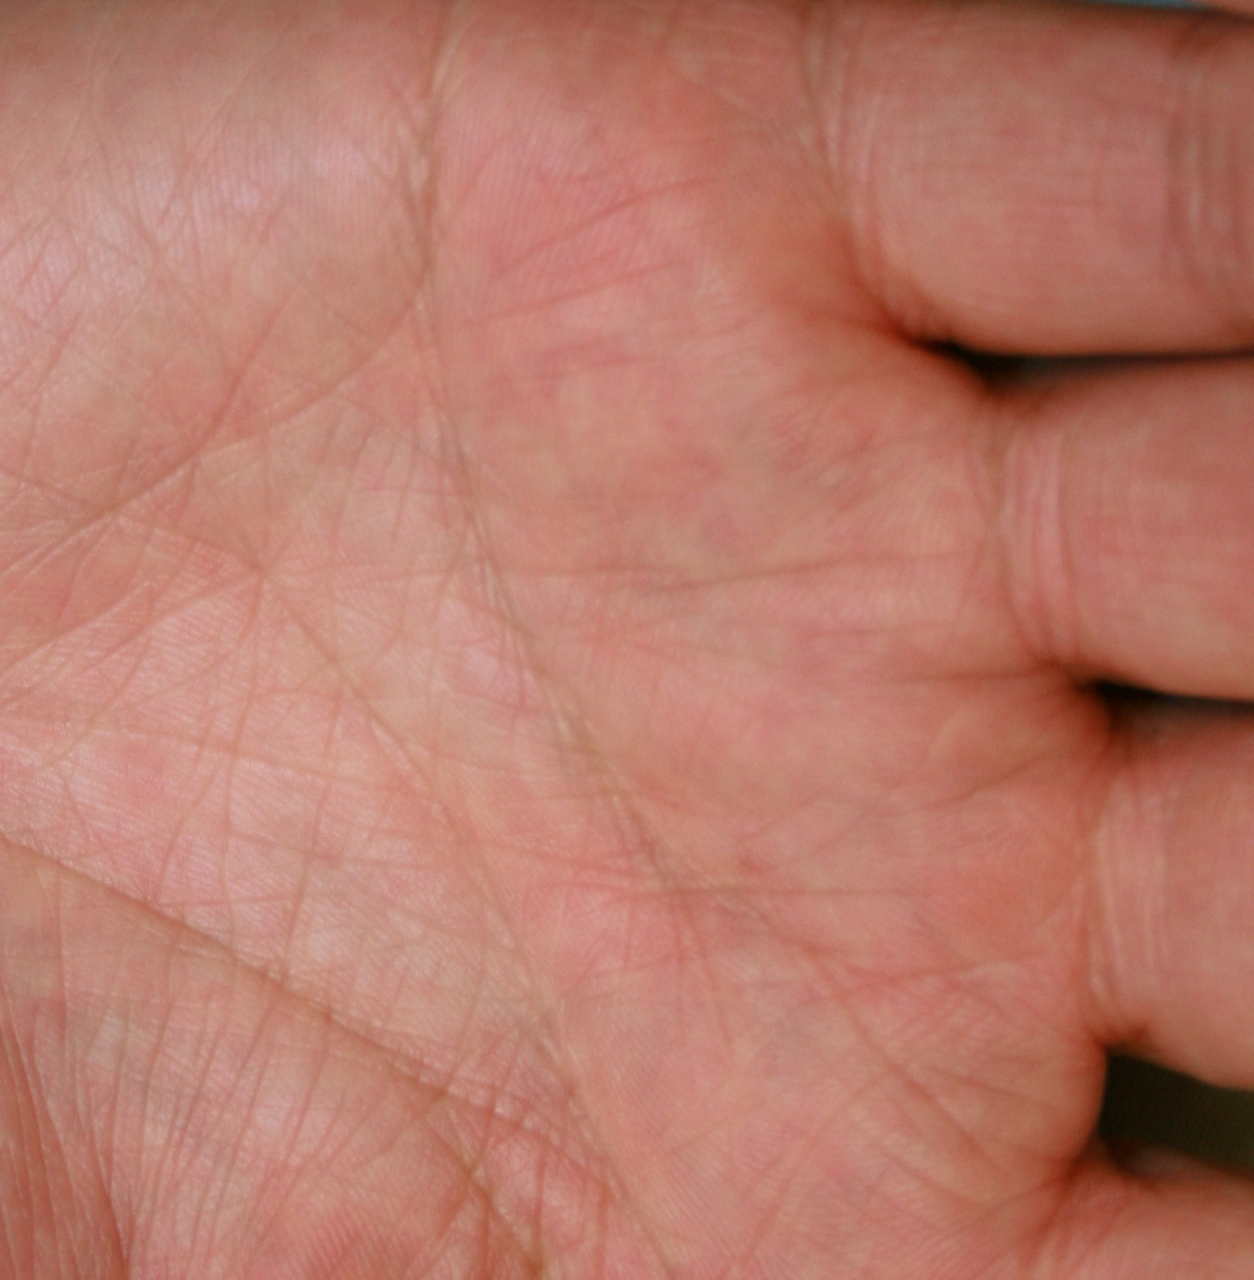 Eczema Take Care Of Those Hands Dr Trevor Erikson